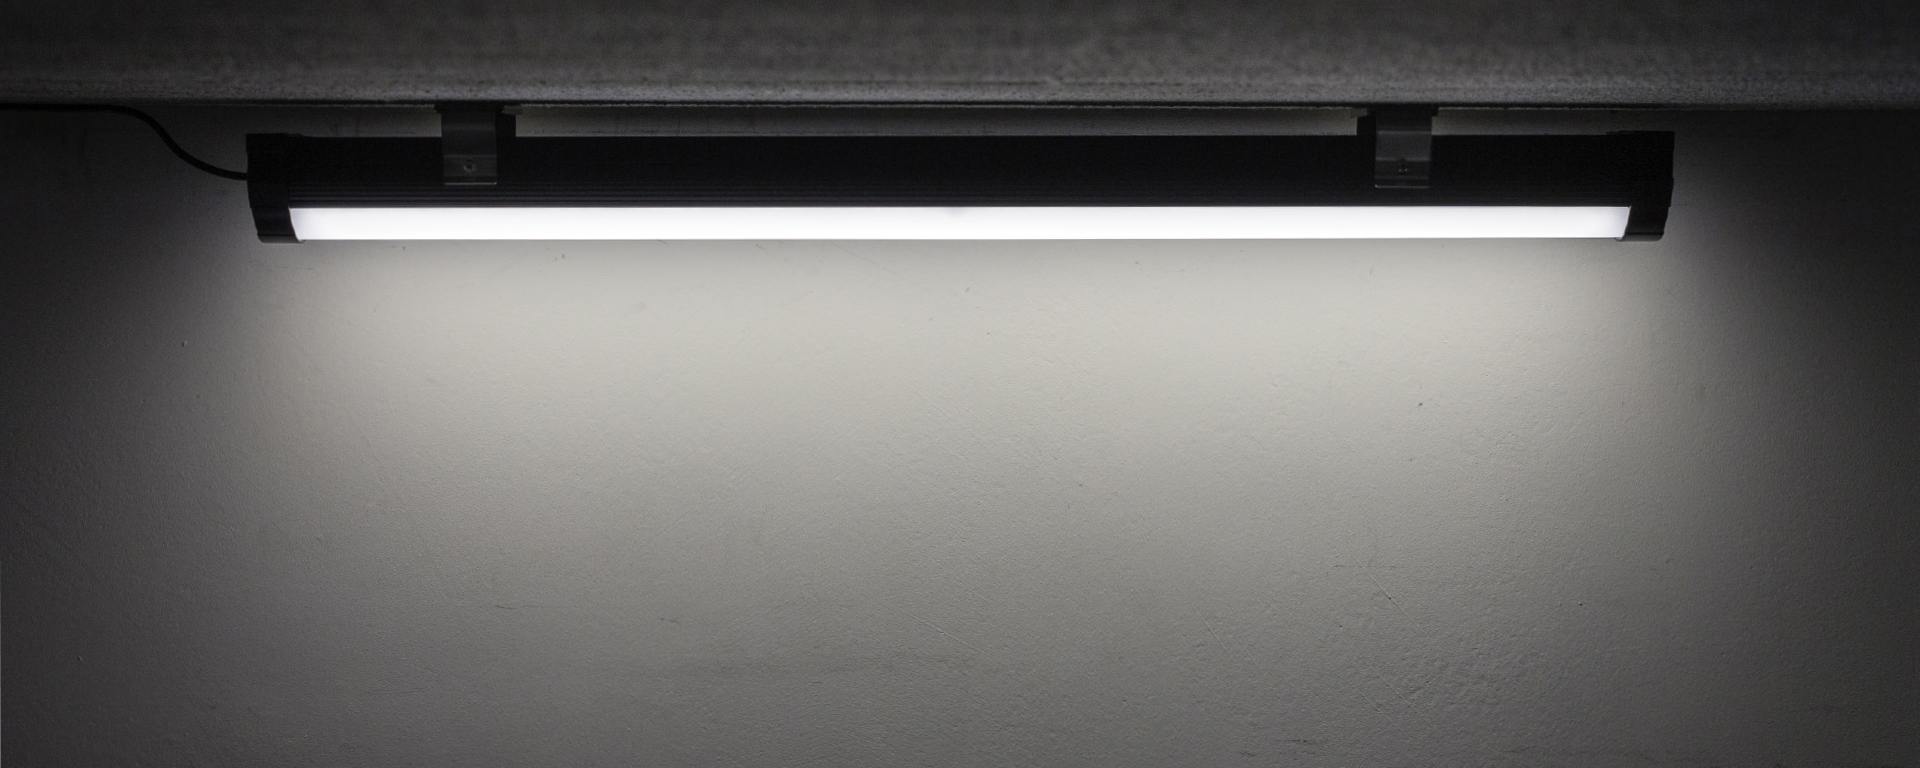 Construído para durar muchos años sin reemplazos ni reparaciones, BNS luminaria LED industrial resolverá cualquier problema relacionado con la iluminación. Un perfecto reemplazo para las luminarias convencionales y fluorescentes.